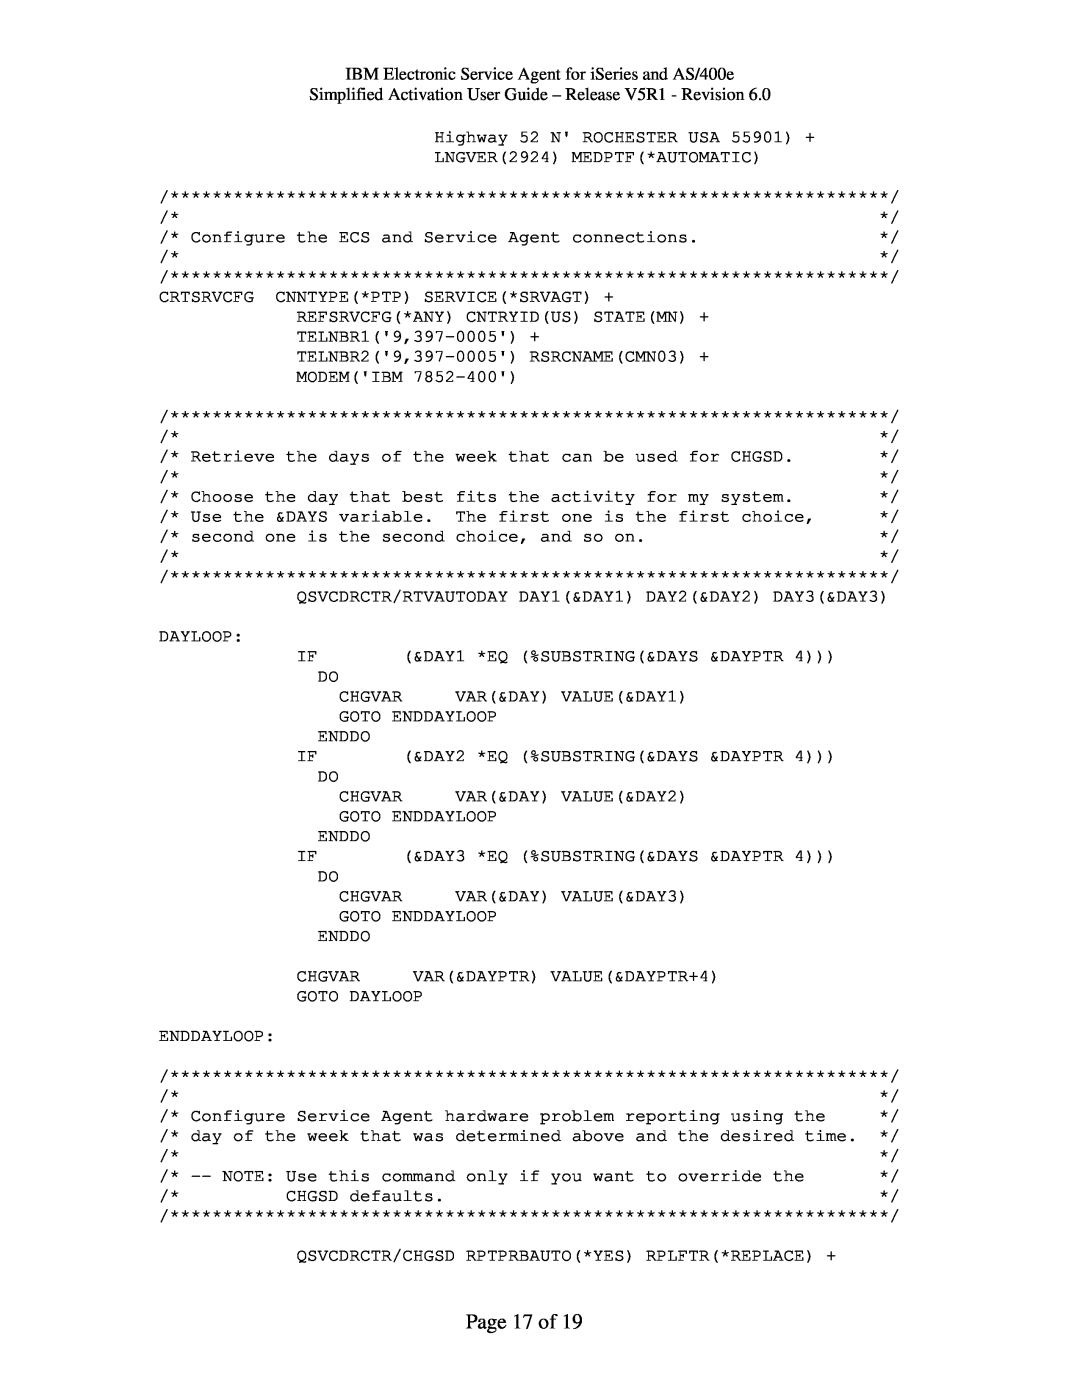 IBM PTF SF67624, iSeries, V5R1 manual Page 17 of 